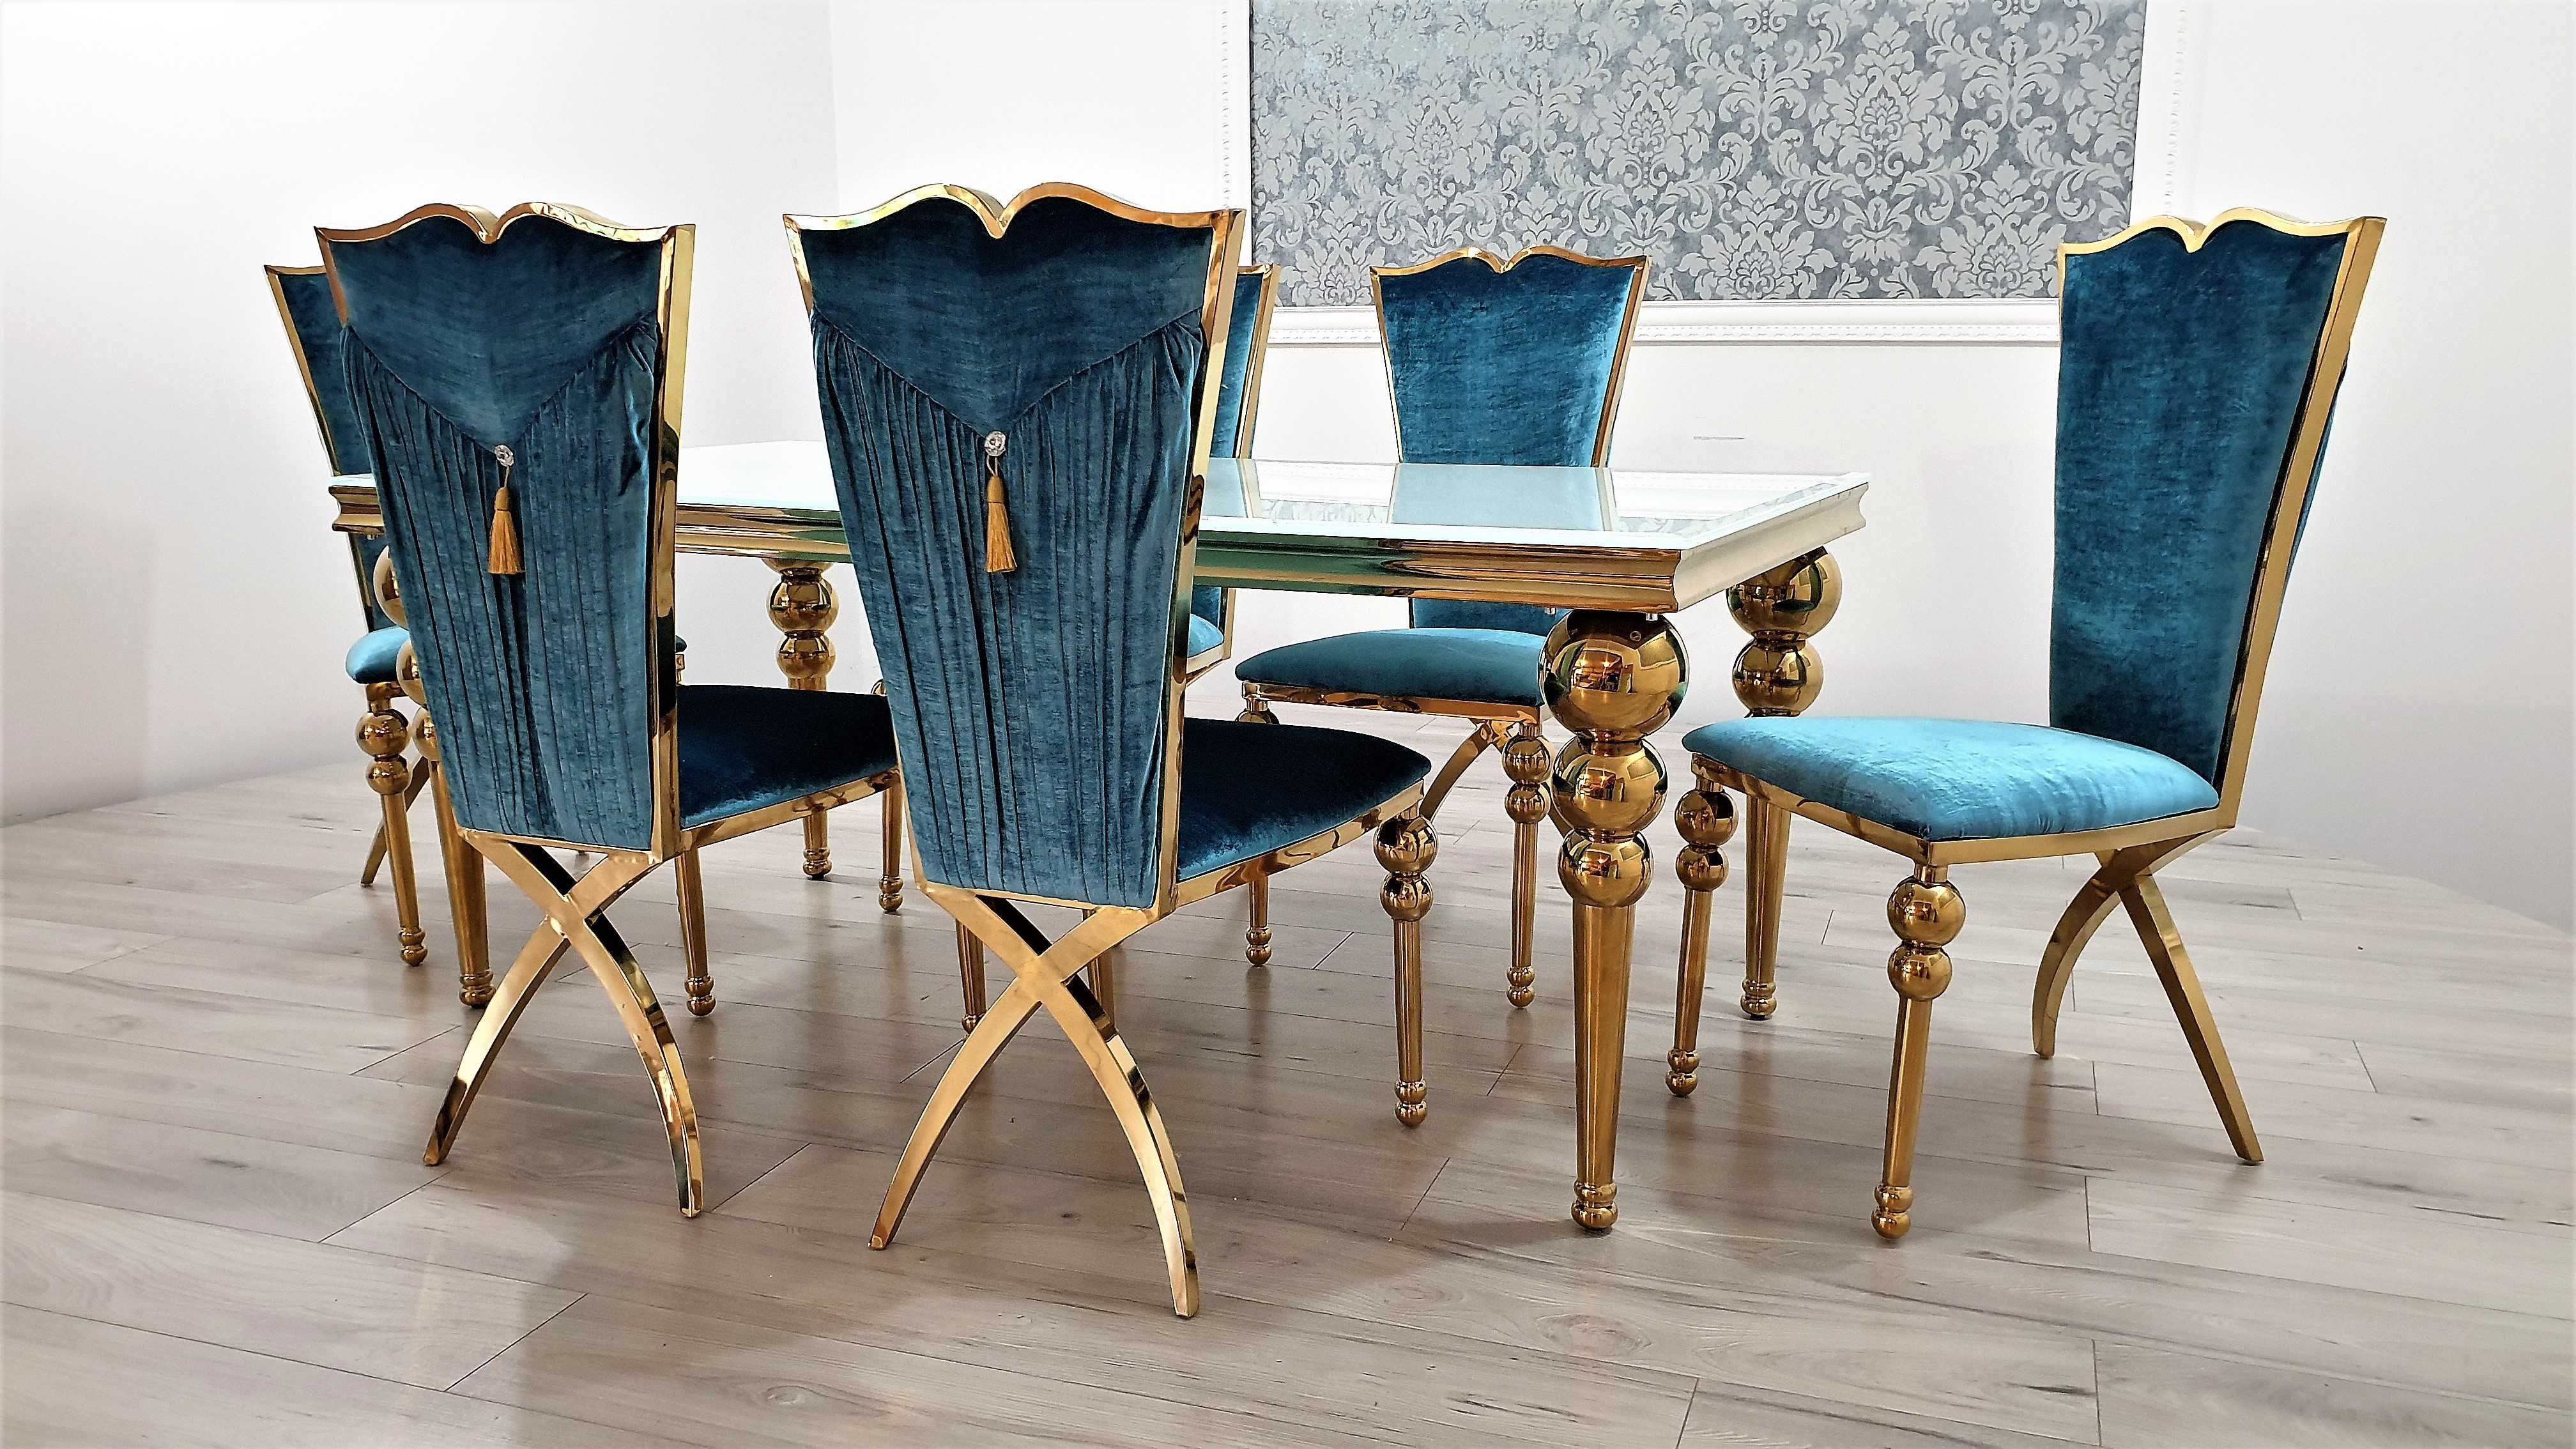 Jadalnia GLAMOUR Stół 180 + 6 krzeseł GOLD / Producent